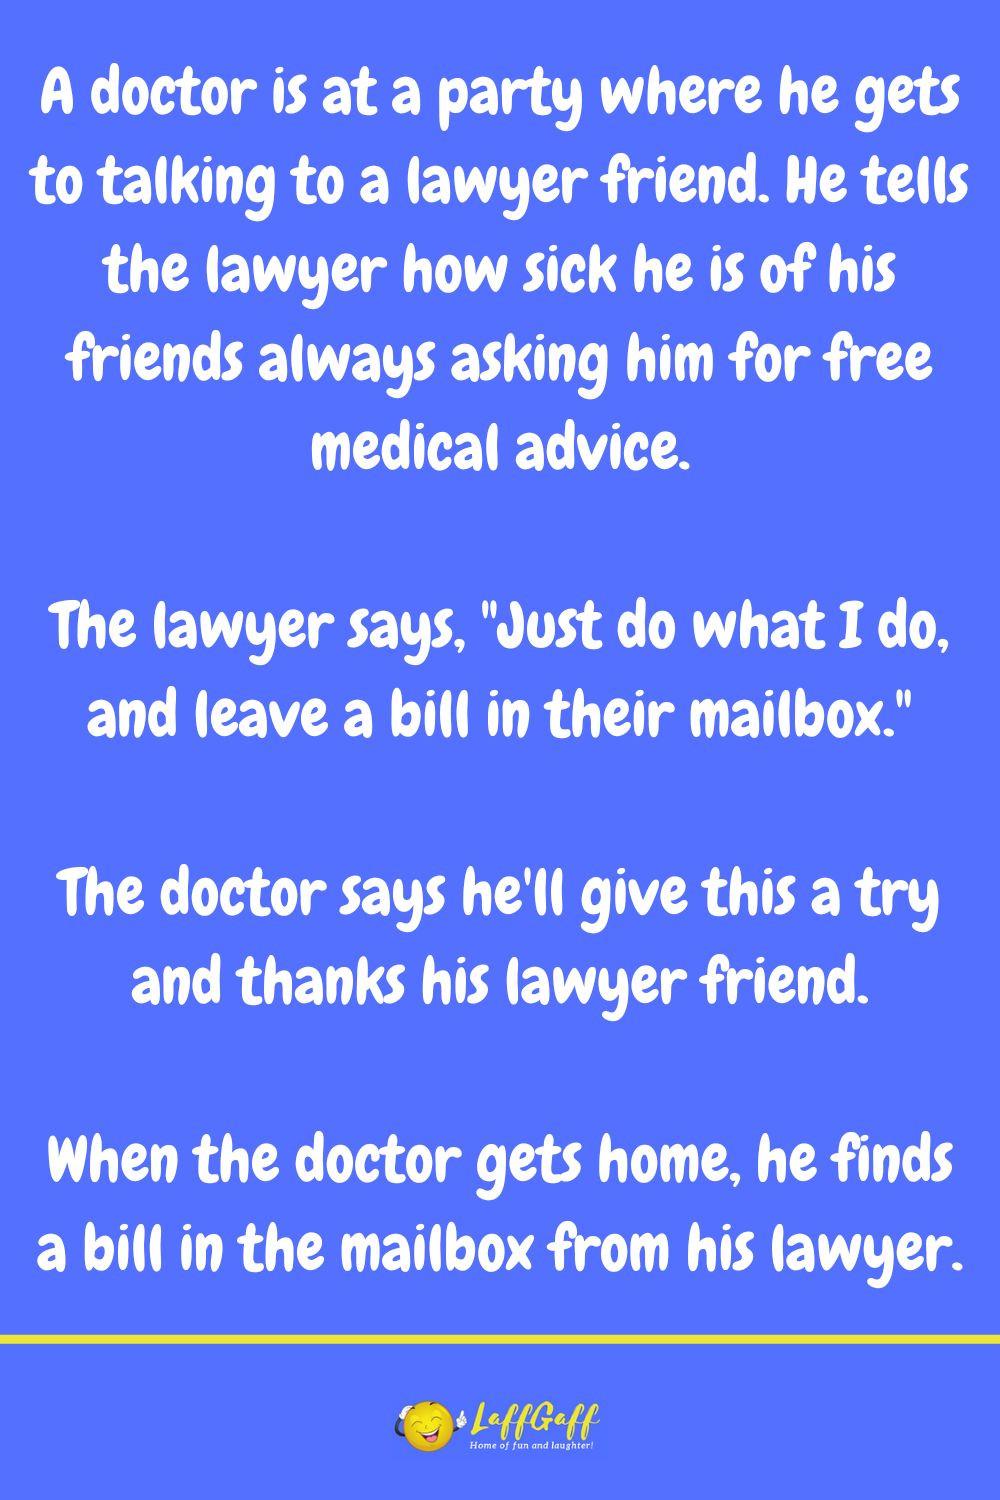 Lawyer joke from LaffGaff.